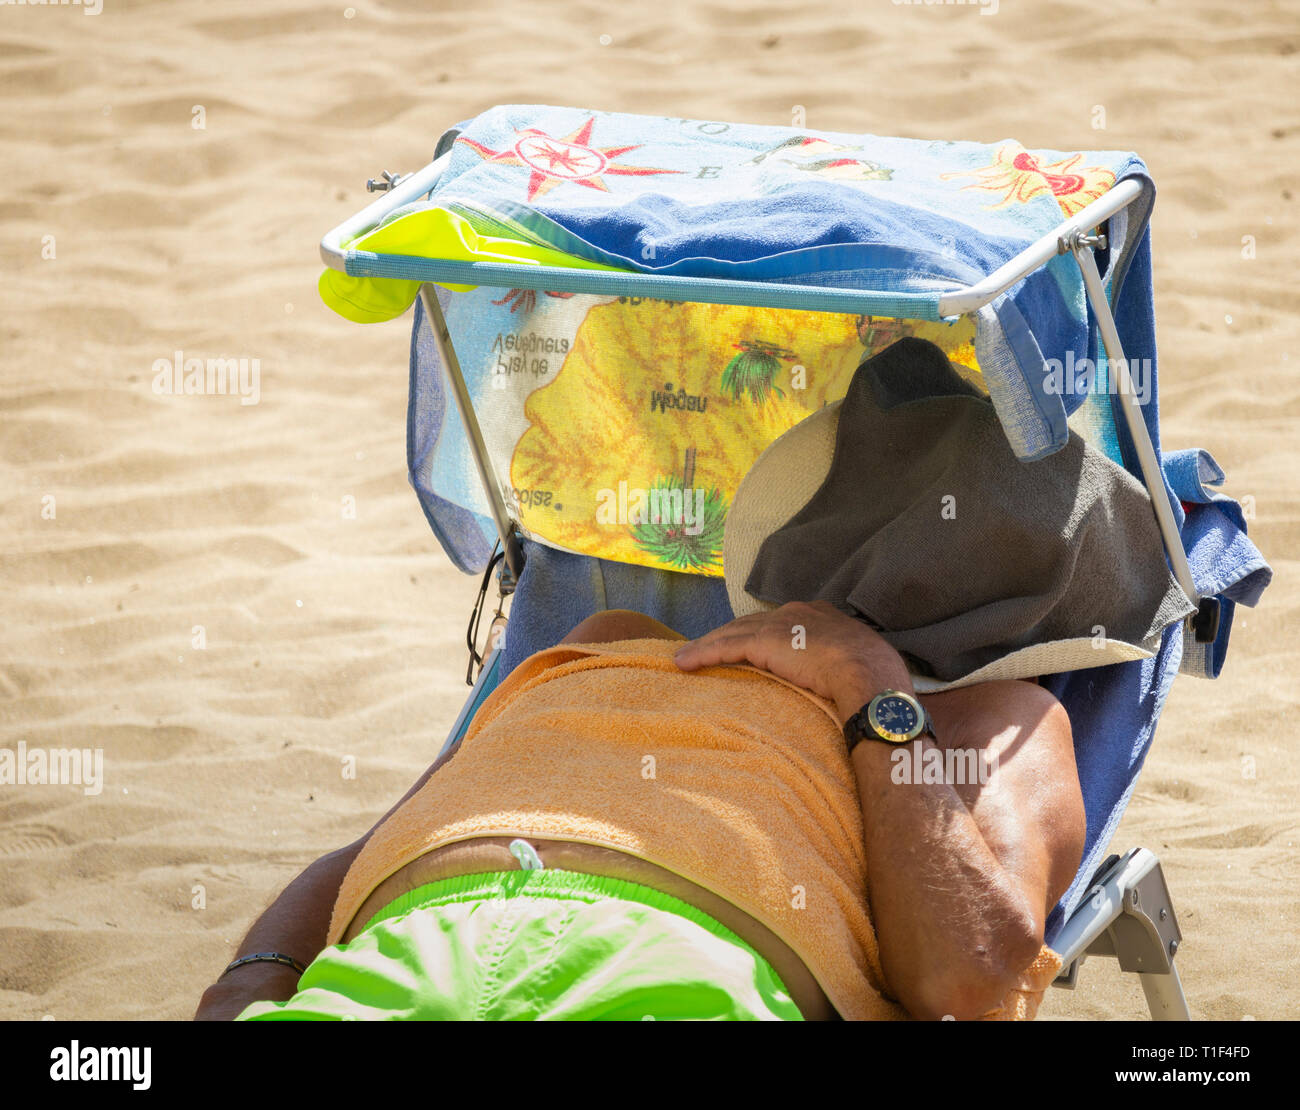 Homme prenant un bain de soleil sur une chaise longue de plage pendant la vague de chaleur. Banque D'Images